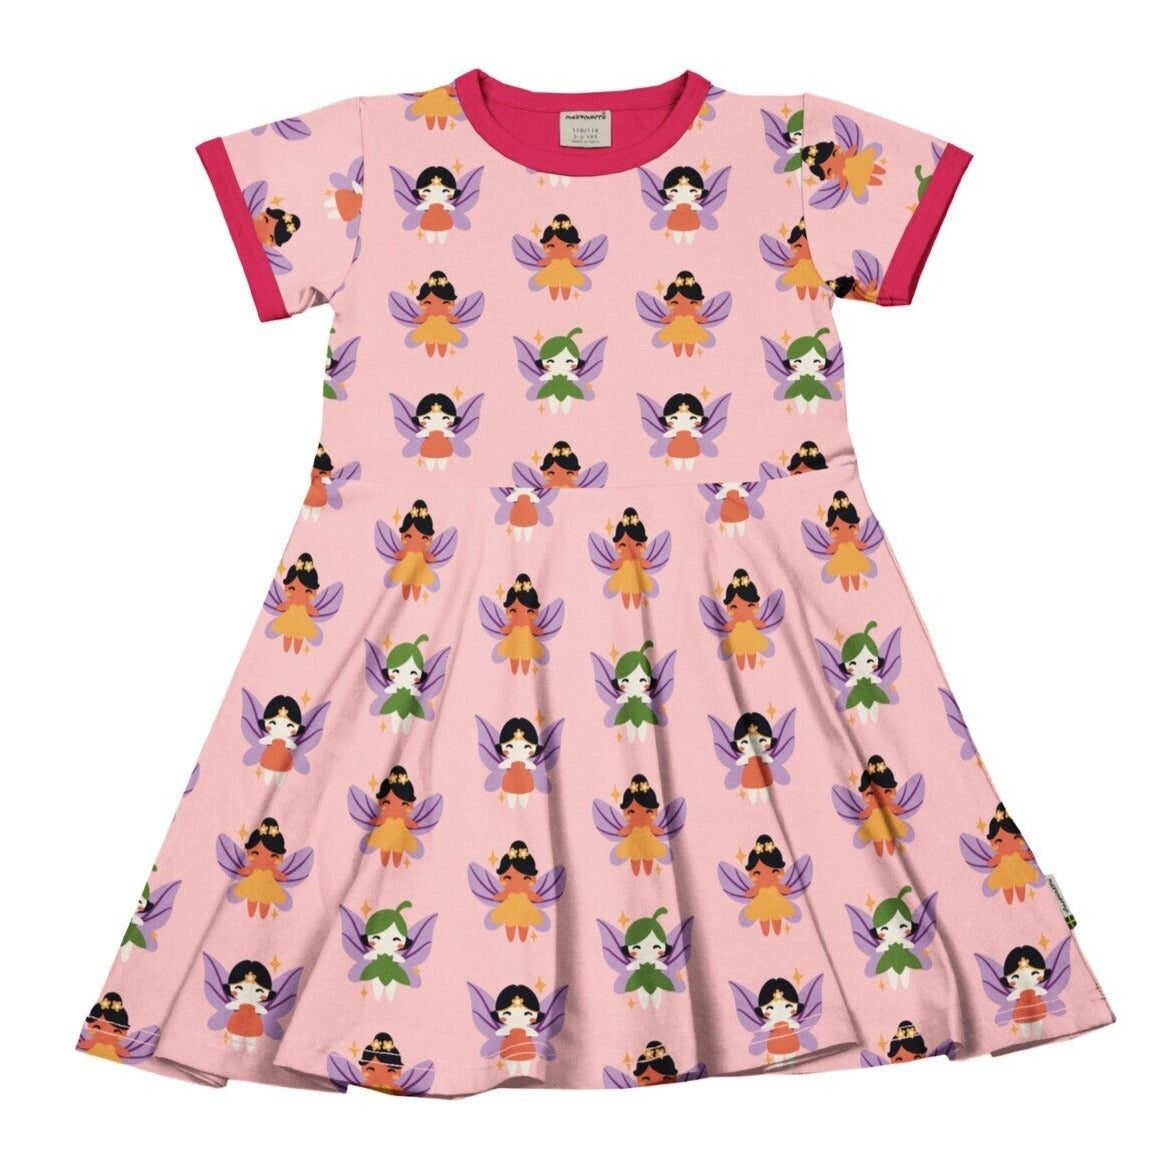 Miela, mergaitiška vasarinė suknelė iš GOTS sertifikuotos organinės medvilnės, trumpomis rankovėmis. Šviesiai rožinė, marginta žaismingomis fėjomis.